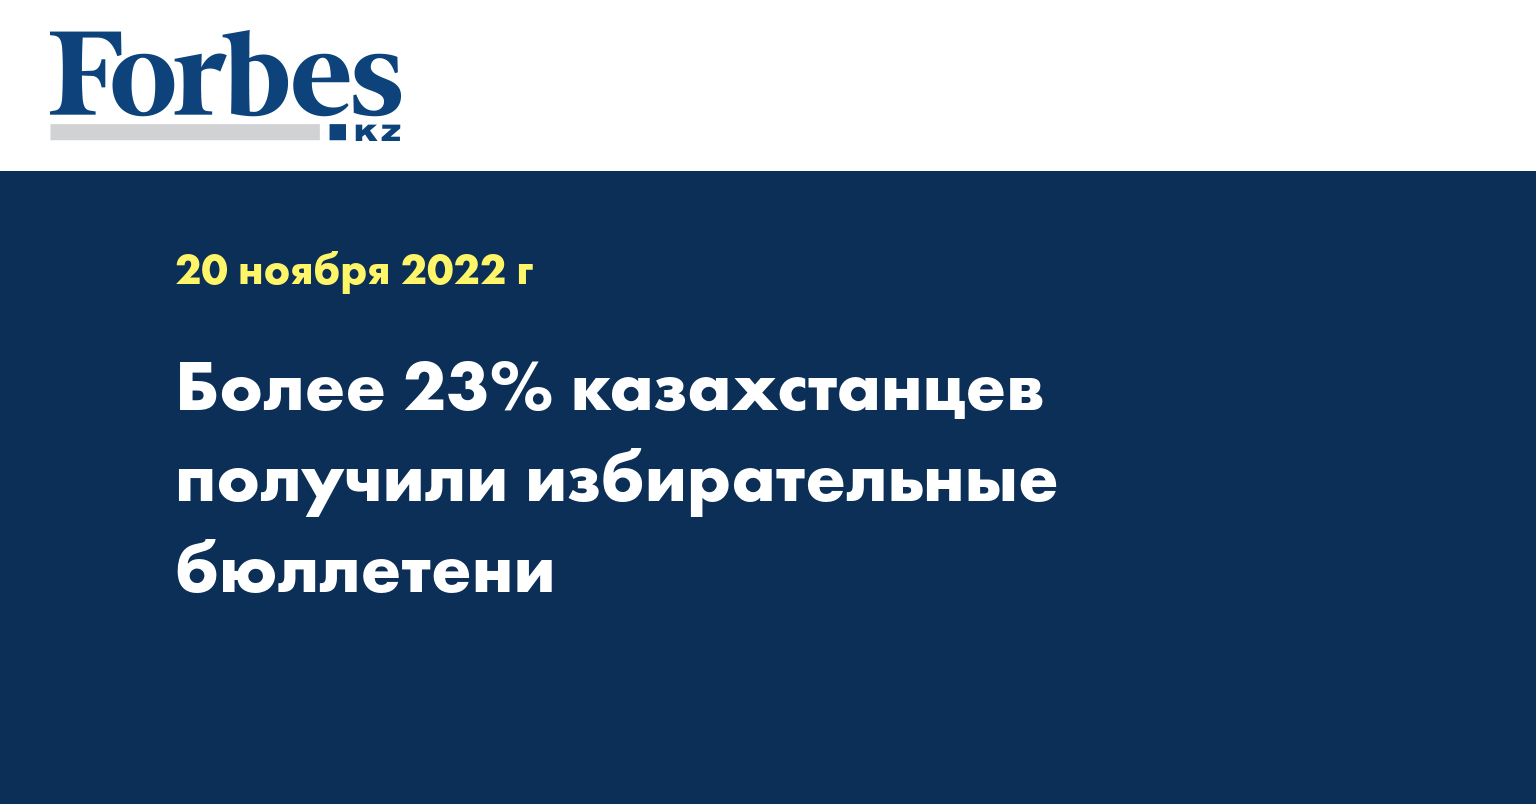 Более 23% казахстанцев получили избирательные бюллетени